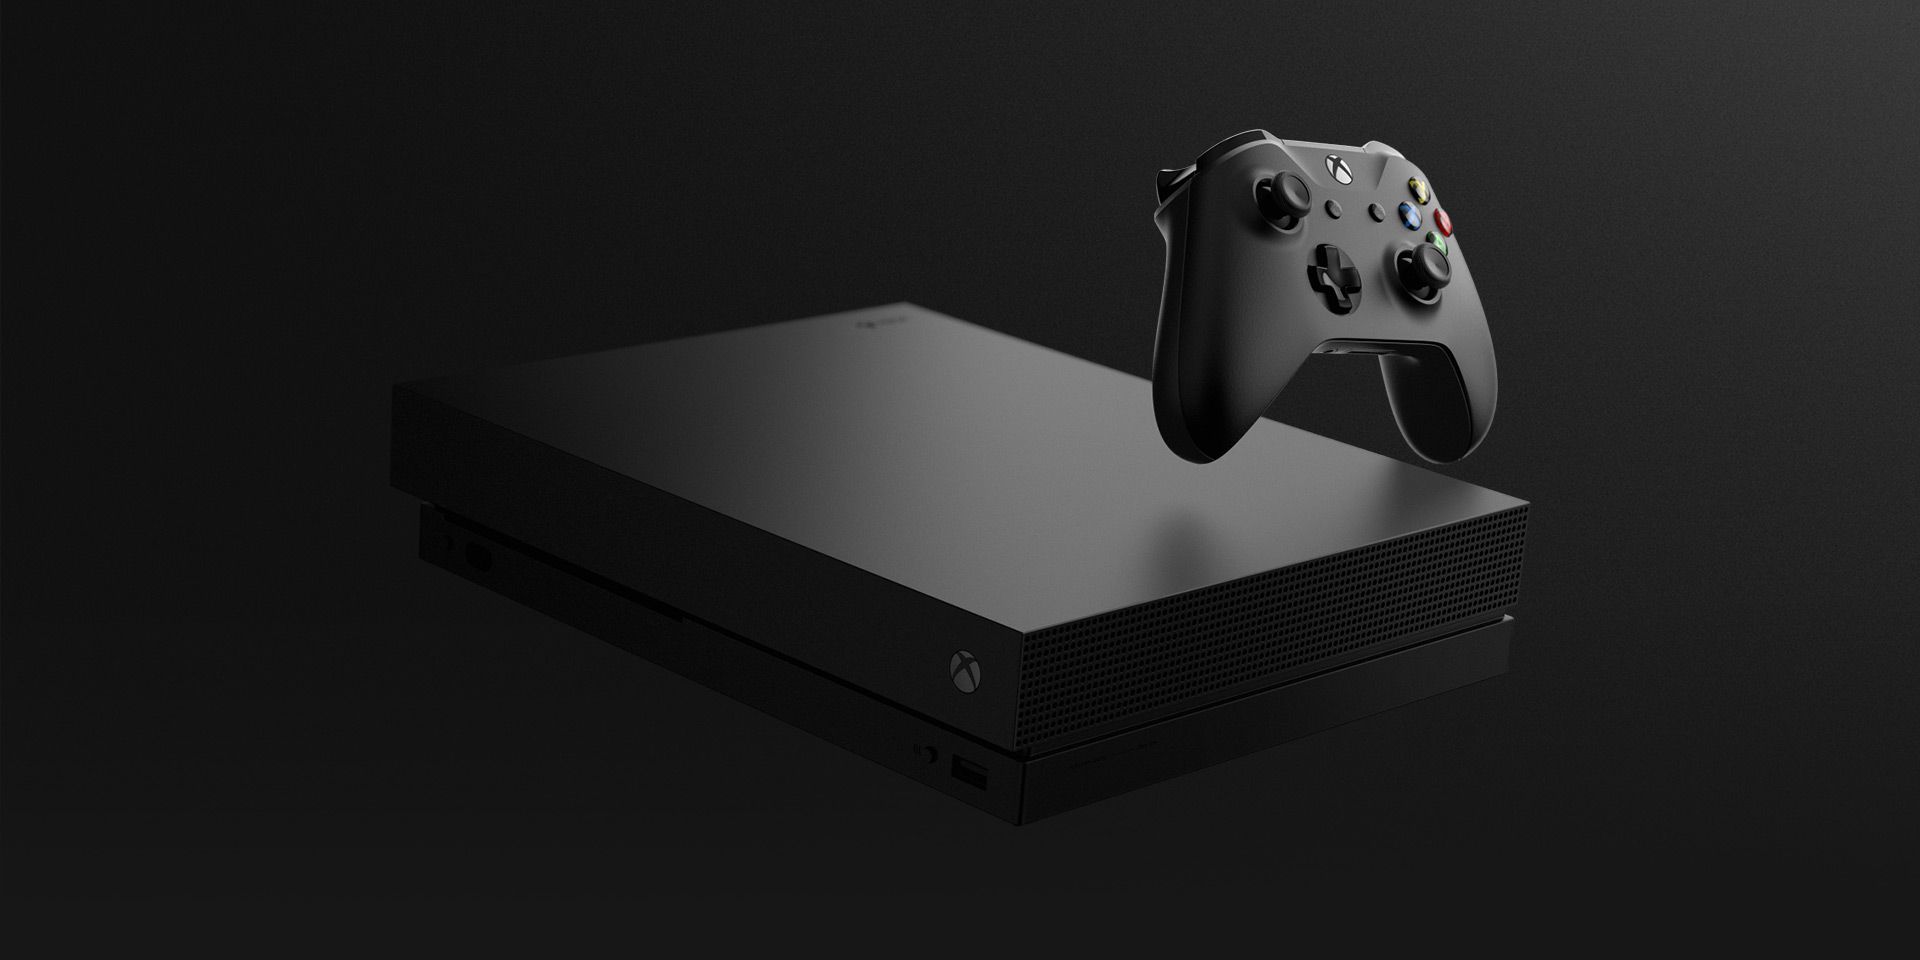 O novo supersampling do PS4 Pro frente ao do Xbox One X, qual o melhor? -  Windows Club